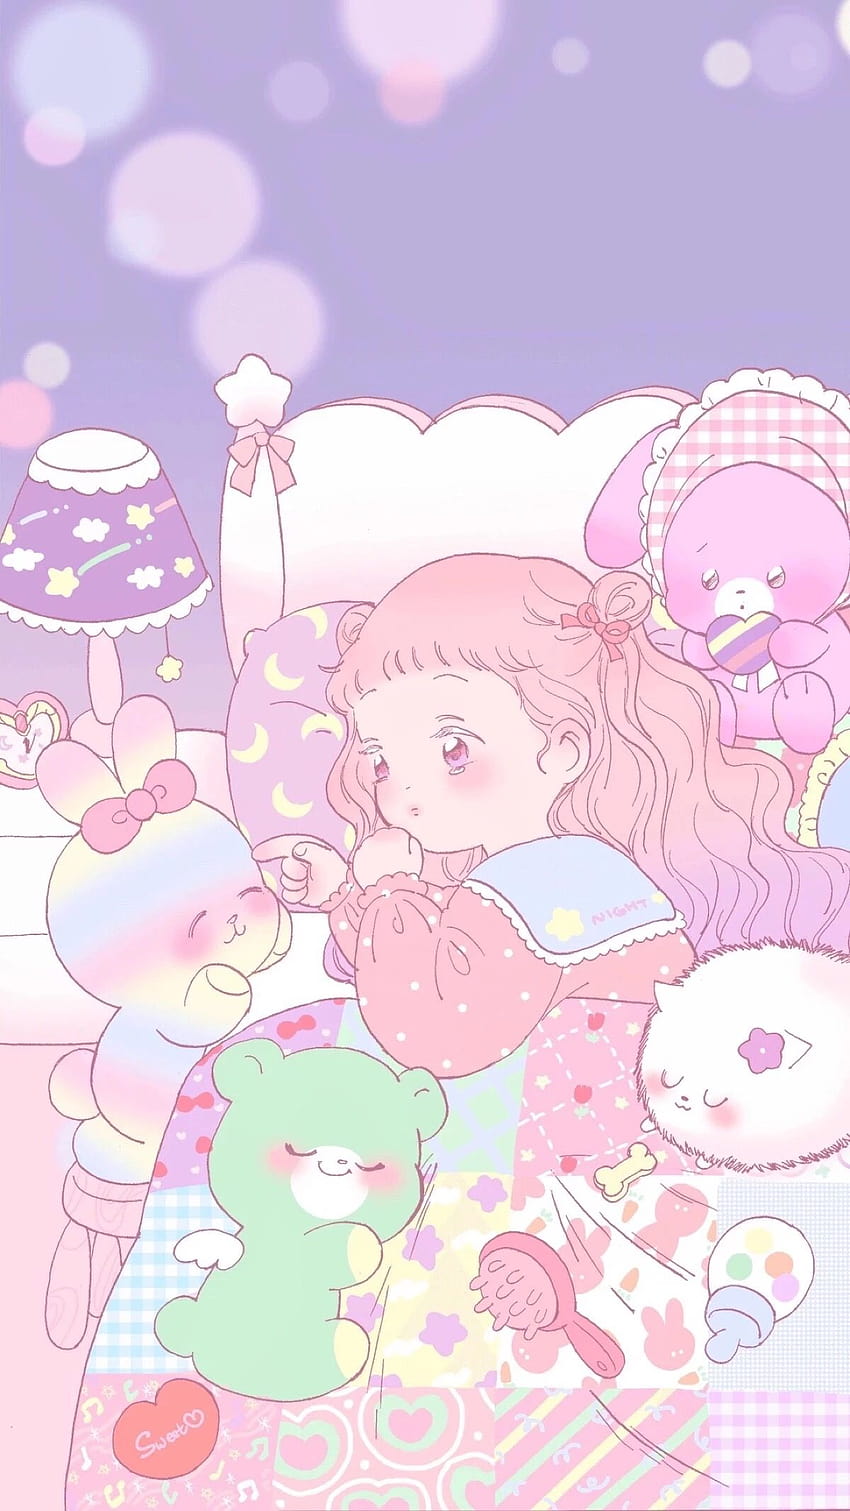 Girl Light Pink Anime Wallpaper - Anime Aesthetic Wallpaper Phone